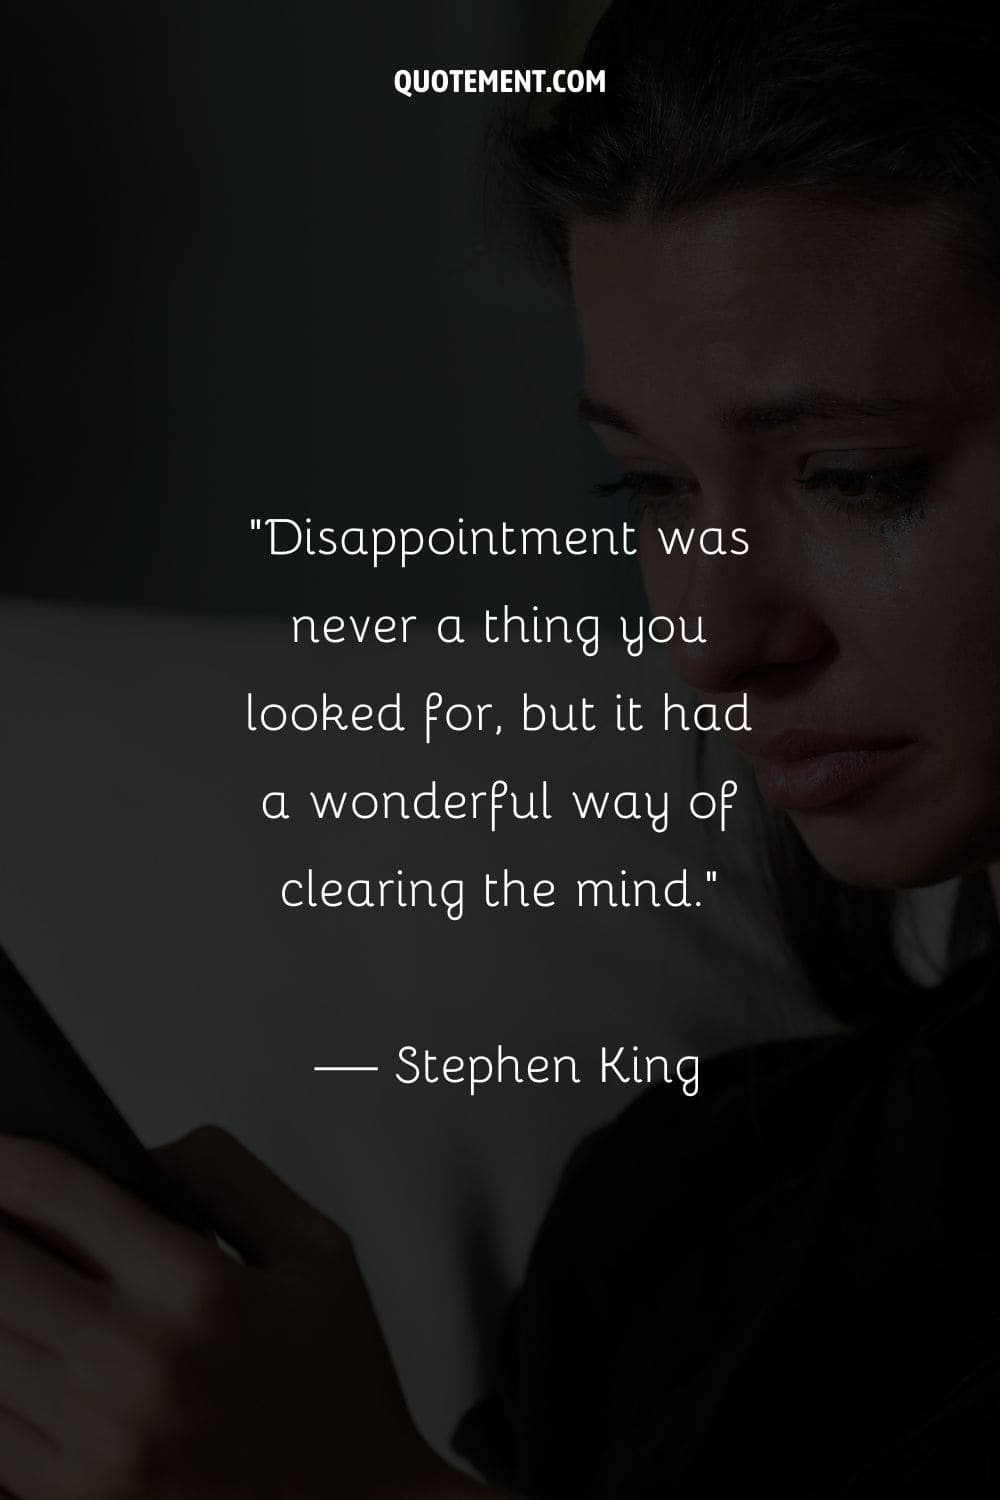 La decepción nunca fue algo que buscaras, pero tenía una forma maravillosa de despejar la mente...